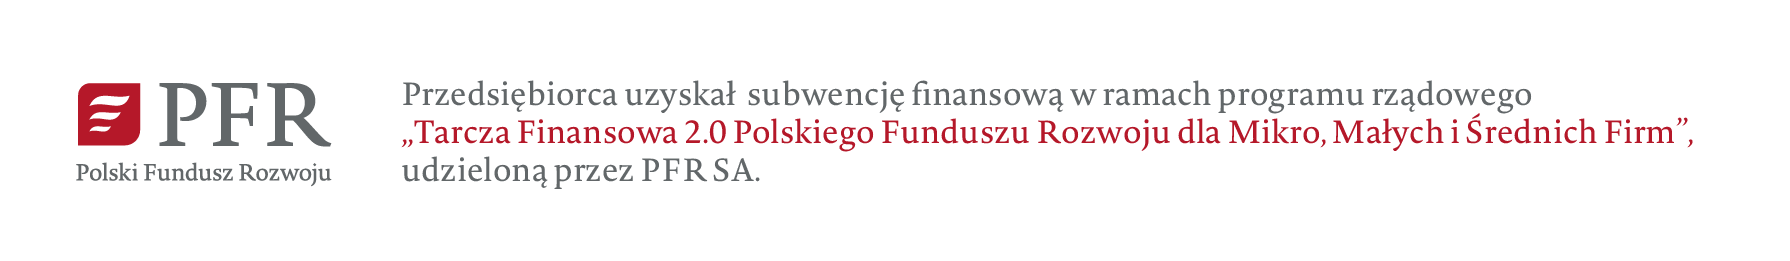 Firma skorzystała z Tarczy 2.0 Polskiego Funduszu Rozwoju